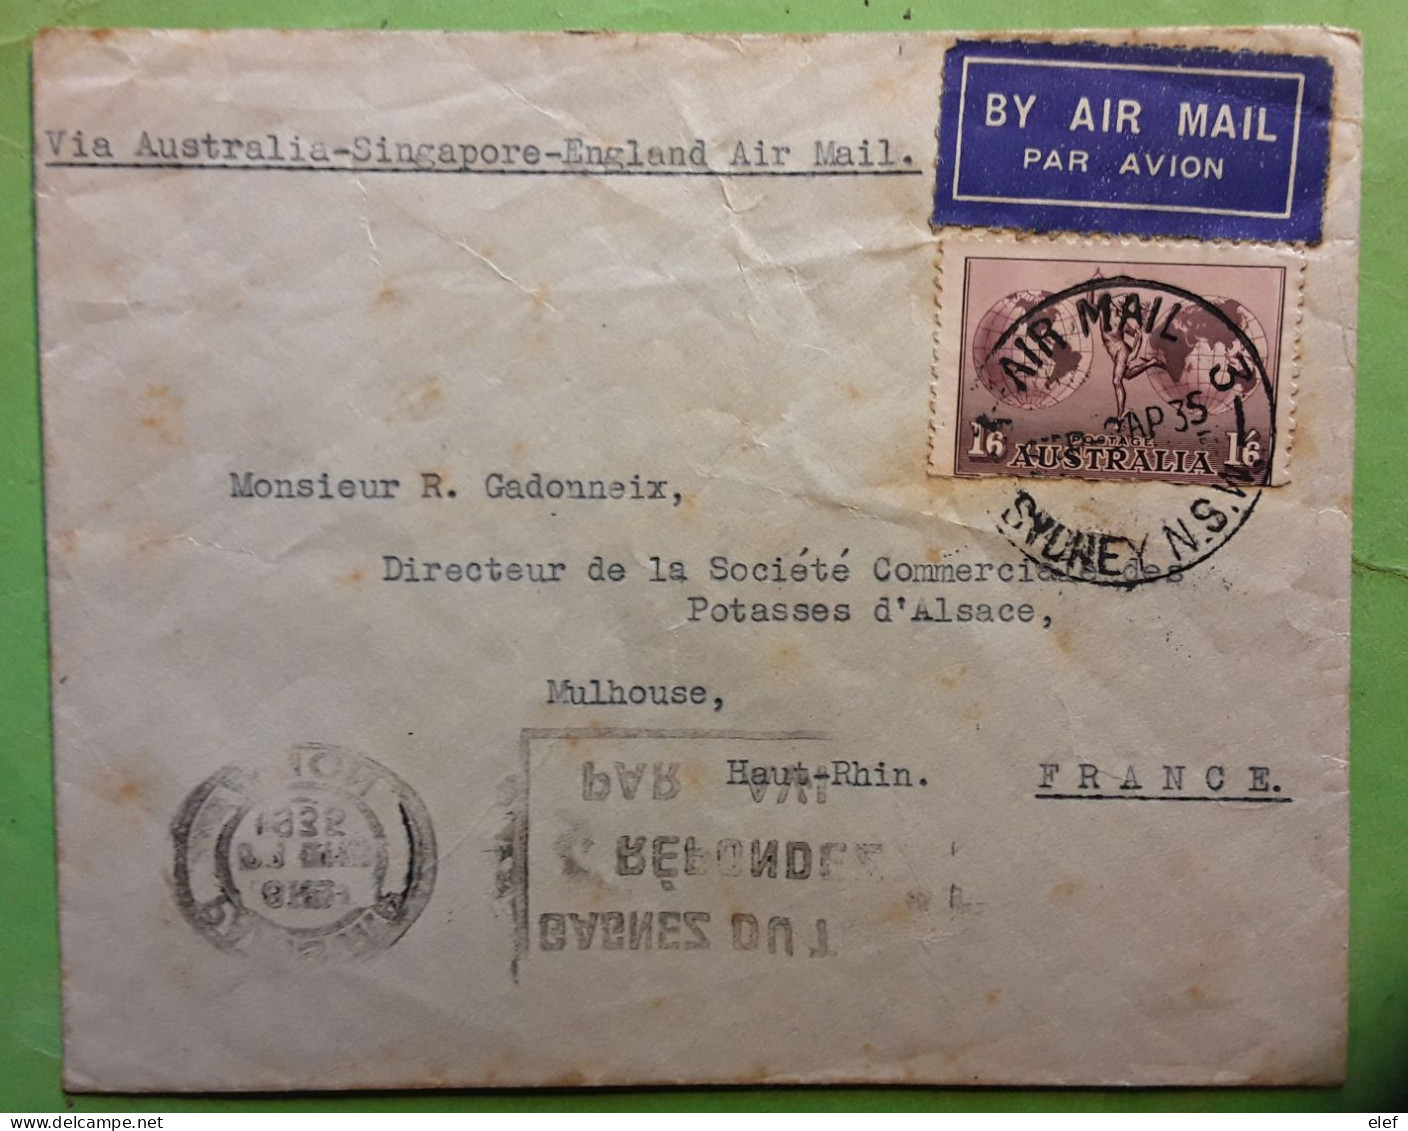 AUSTRALIA 1935 Sydney Airmail Cover Yvert No 5, 1/6 Sh Brun Lilas,Via Singapore England > STE Potasses D'Alsace Mulhouse - Briefe U. Dokumente